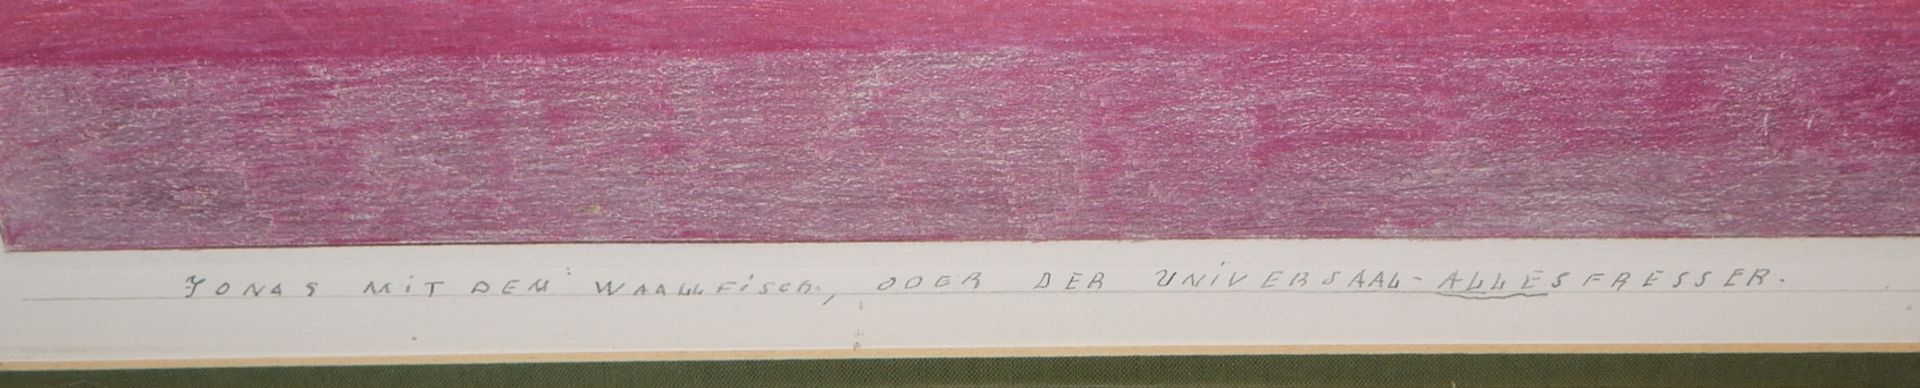 Friedrich Schroeder Sonnenstern, "Jonas mit dem Waallfisch, oder der Universaal-Allesfresser", groß - Bild 5 aus 9